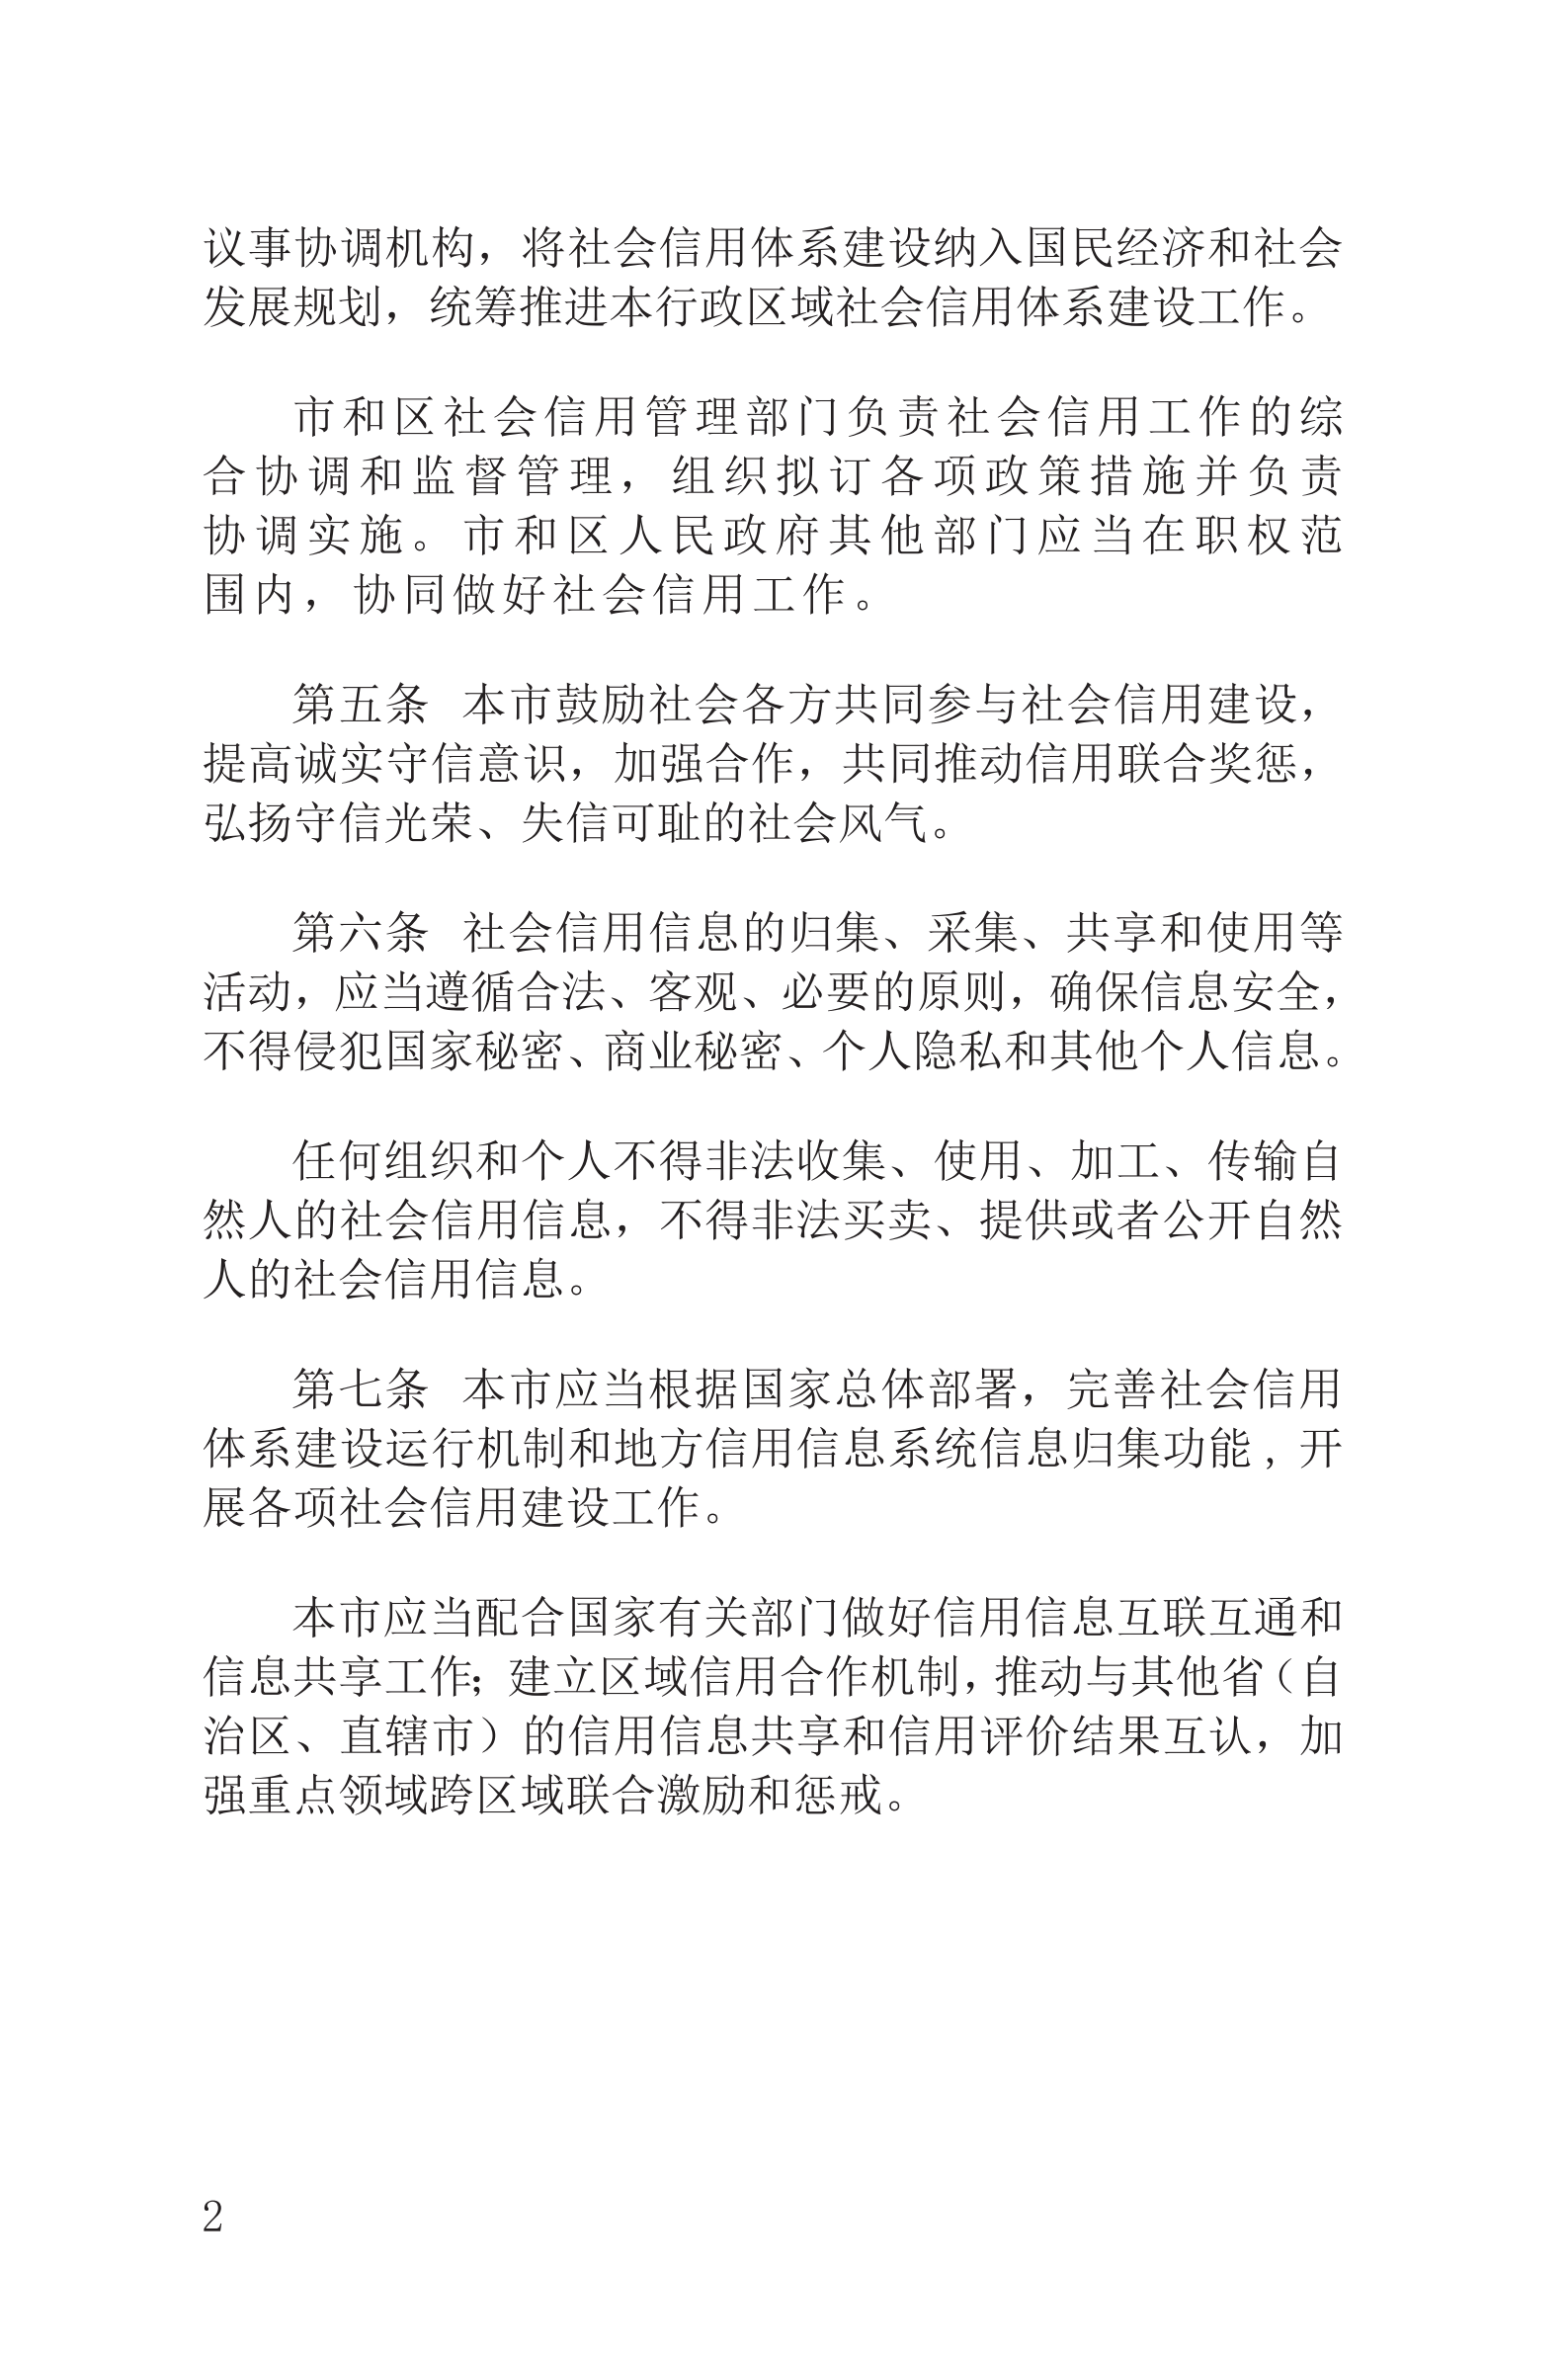 上海市社会信用条例_03.png